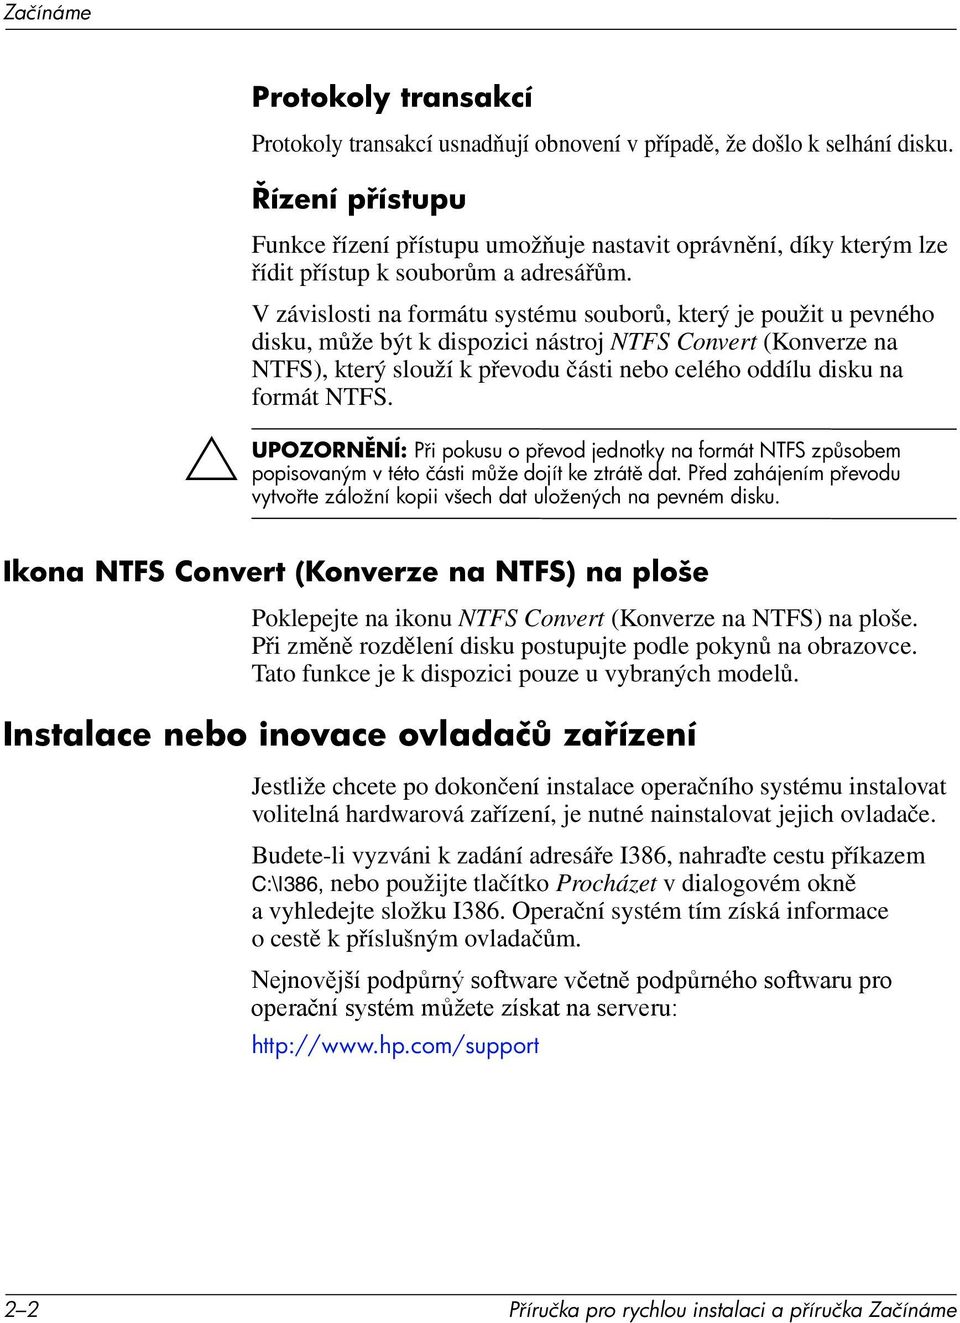 V závislosti na formátu systému souborů, který je použit u pevného disku, může být k dispozici nástroj NTFS Convert (Konverze na NTFS), který slouží k převodu části nebo celého oddílu disku na formát